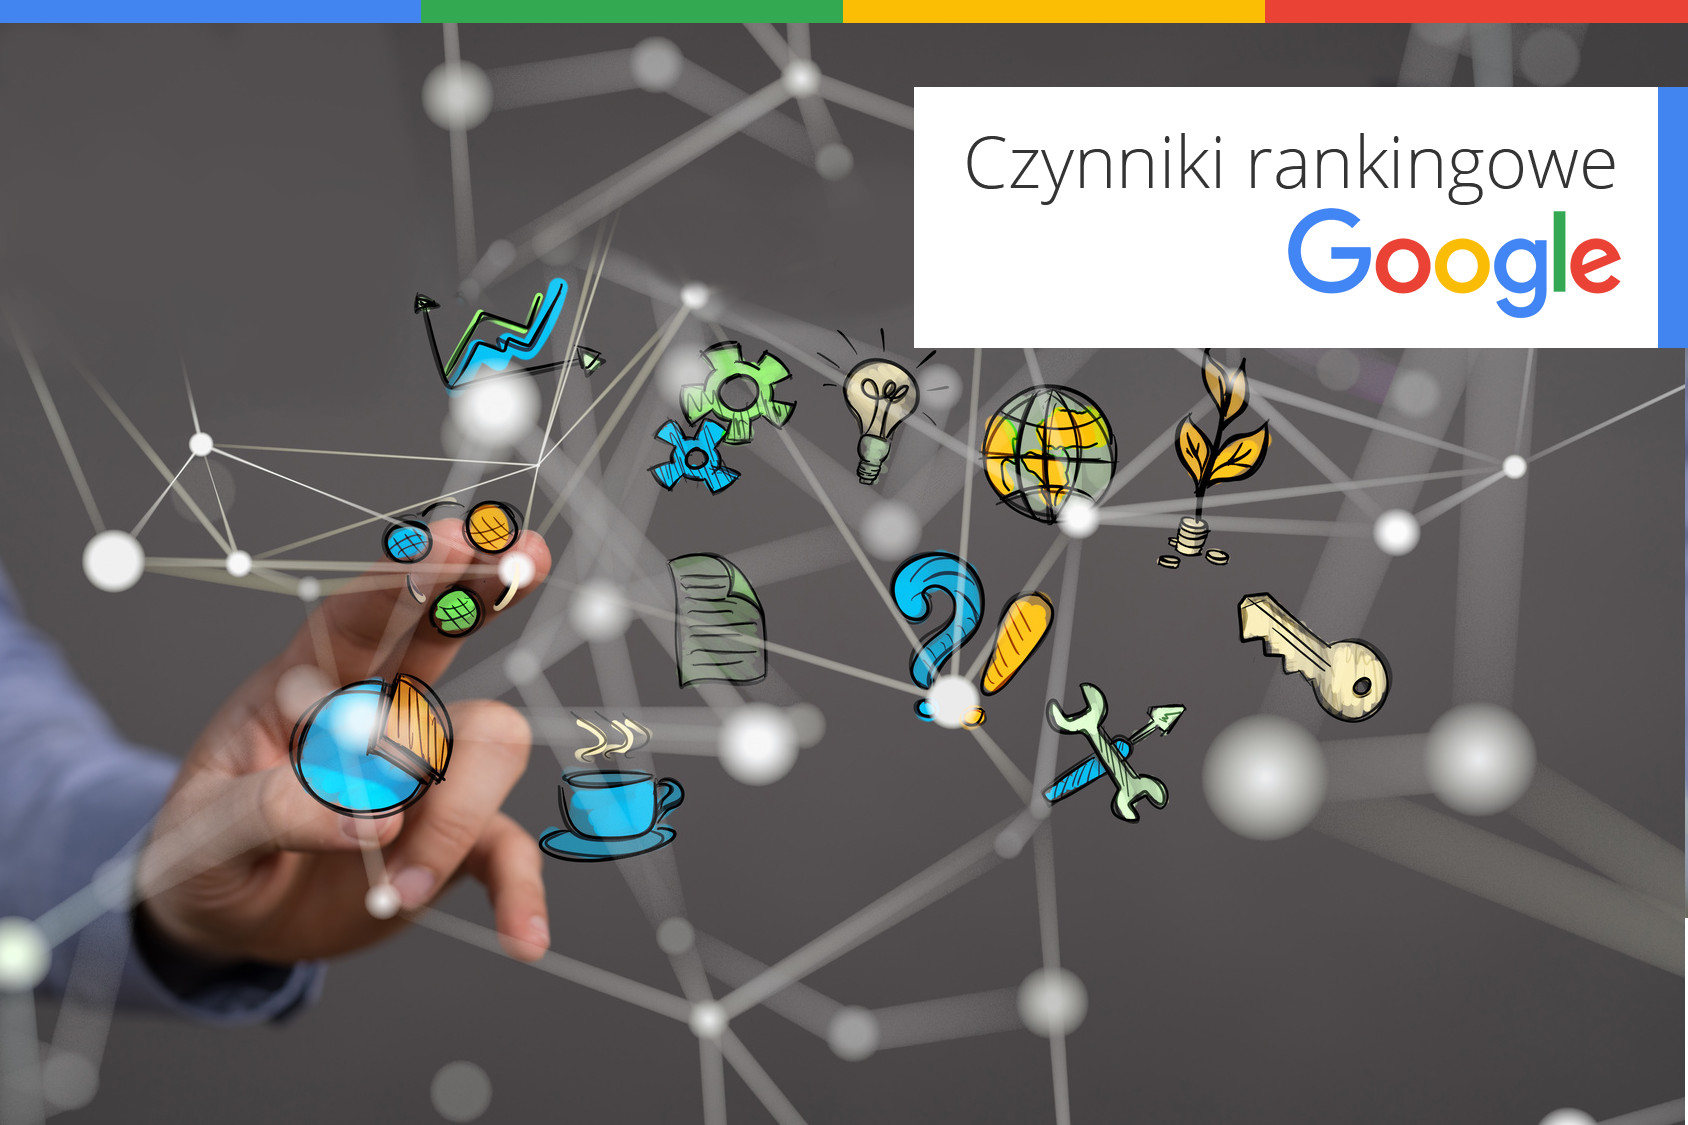 Czynniki rankingowe Google część 10. Podsumowanie